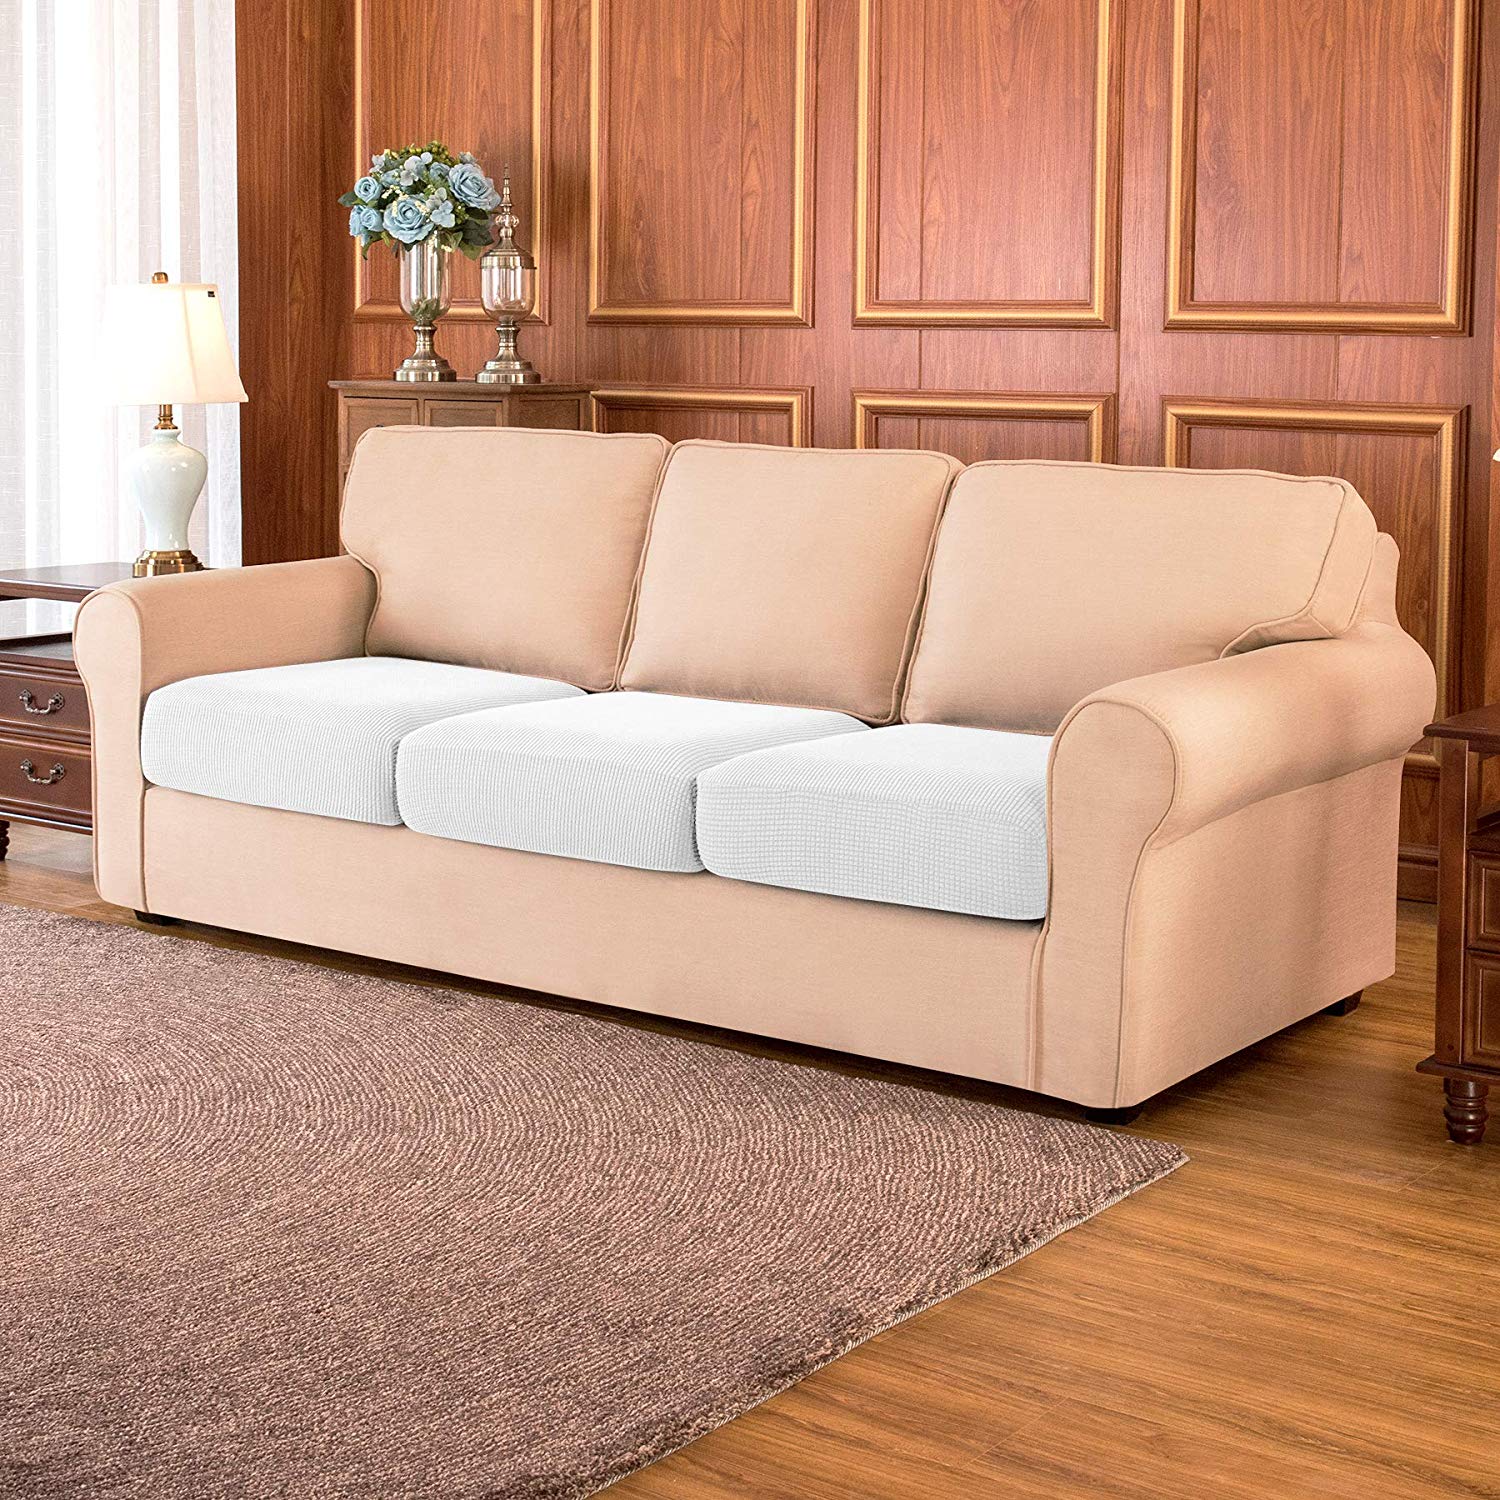 Sofa Cushion / Off-white Plaid